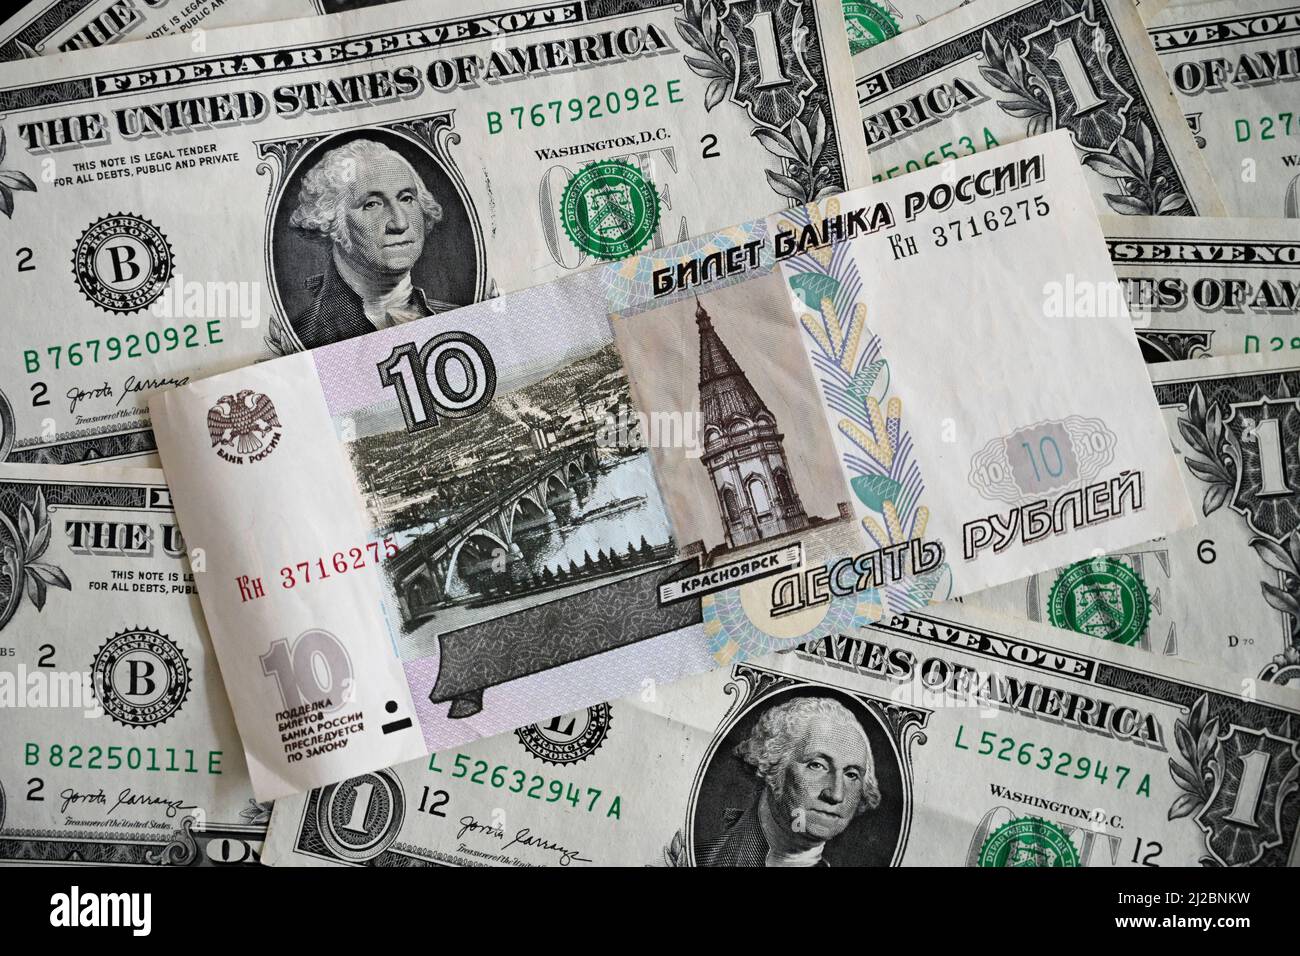 Rubel, US-Dollar, Banknoten, Geldscheine, Studioaufnahme Stock Photo